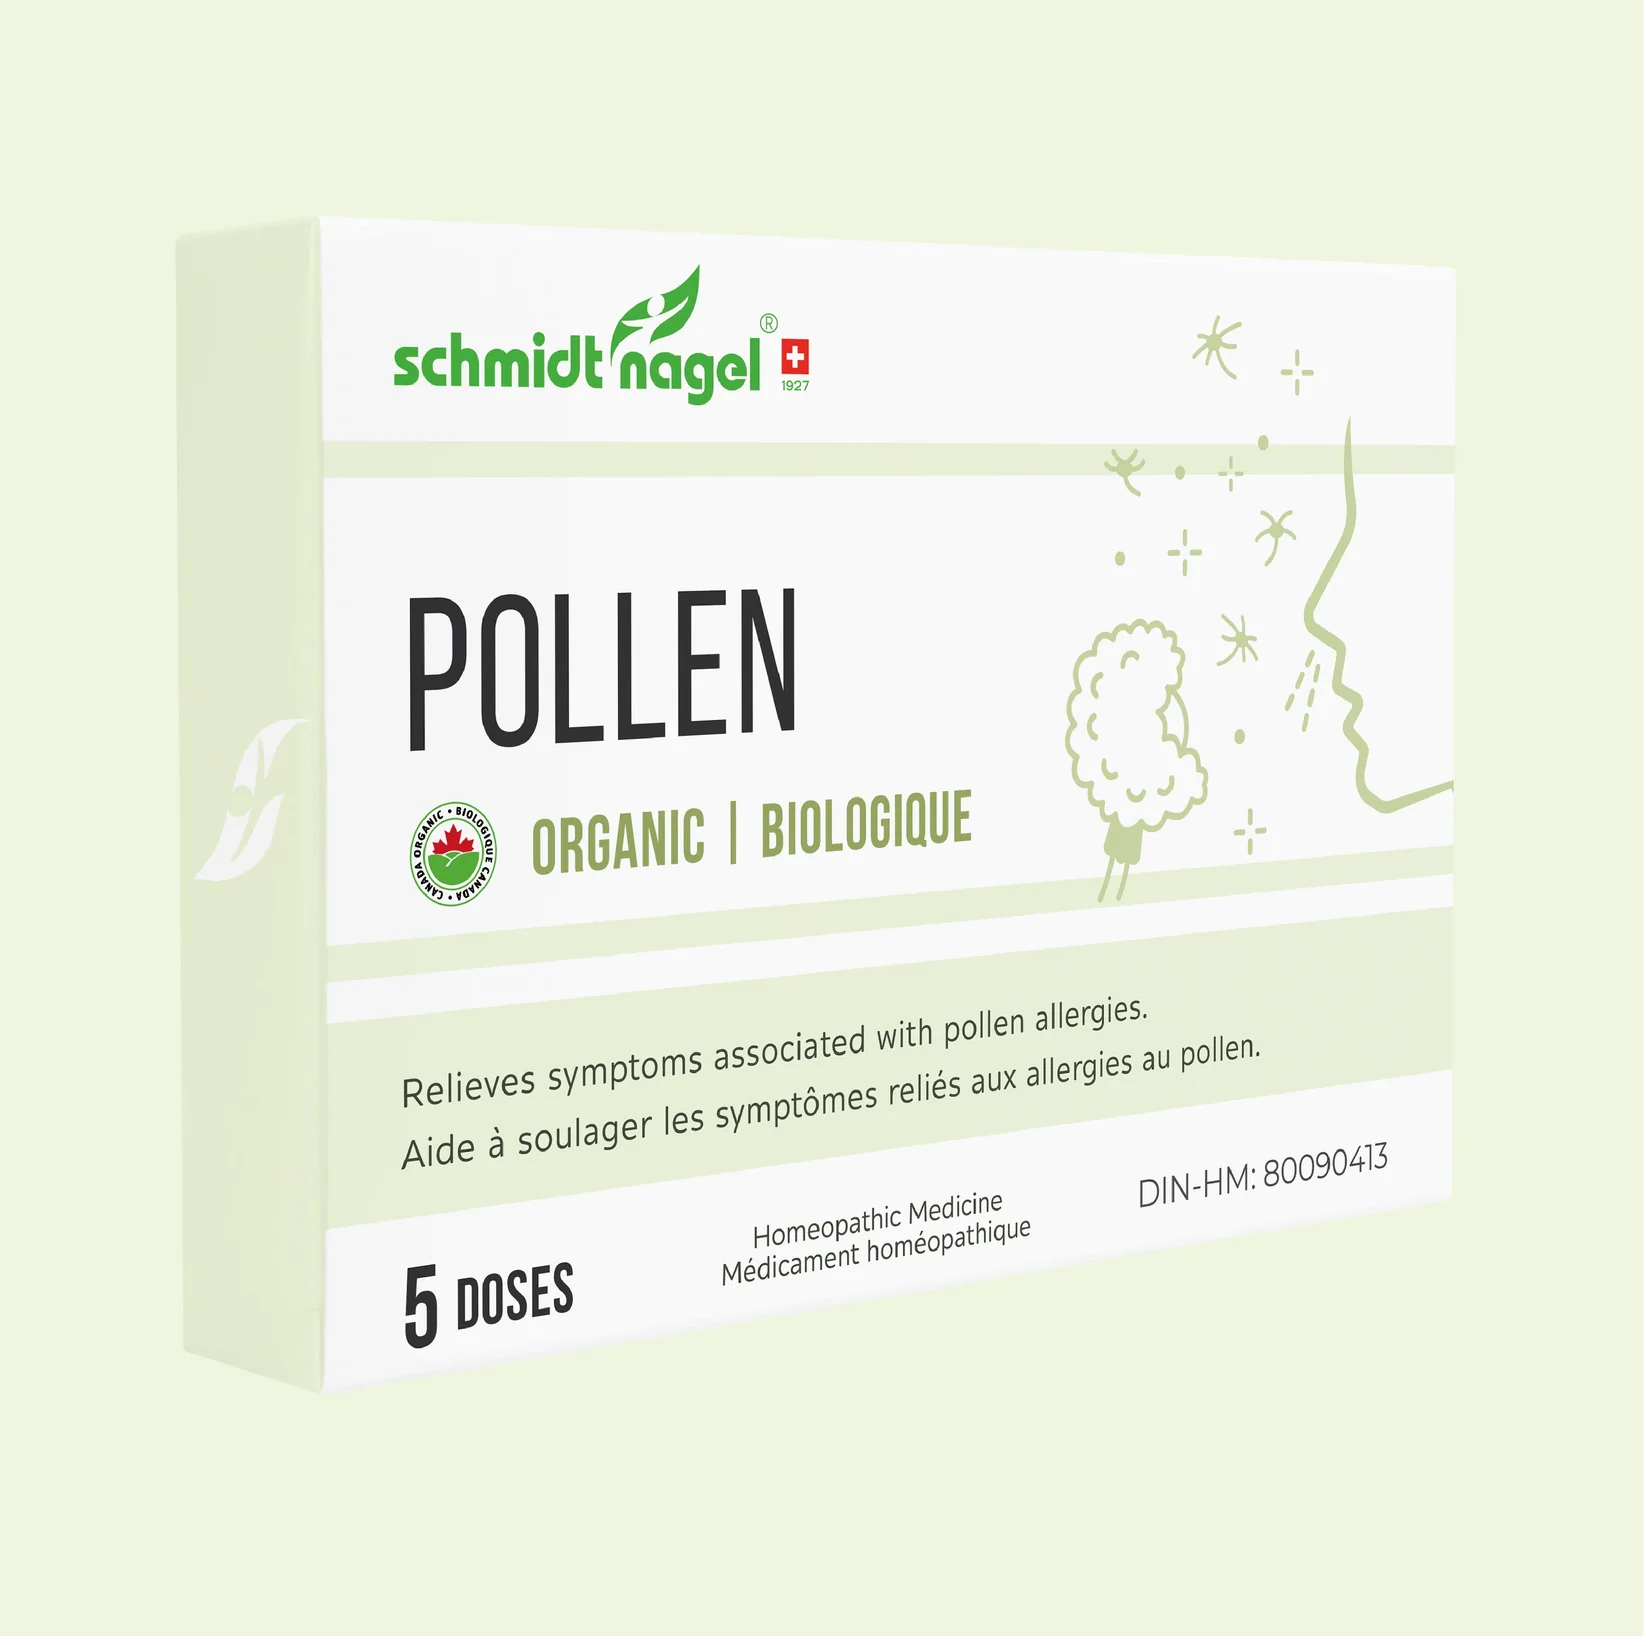 Pollen 5 doses, Pollen allergies relieve